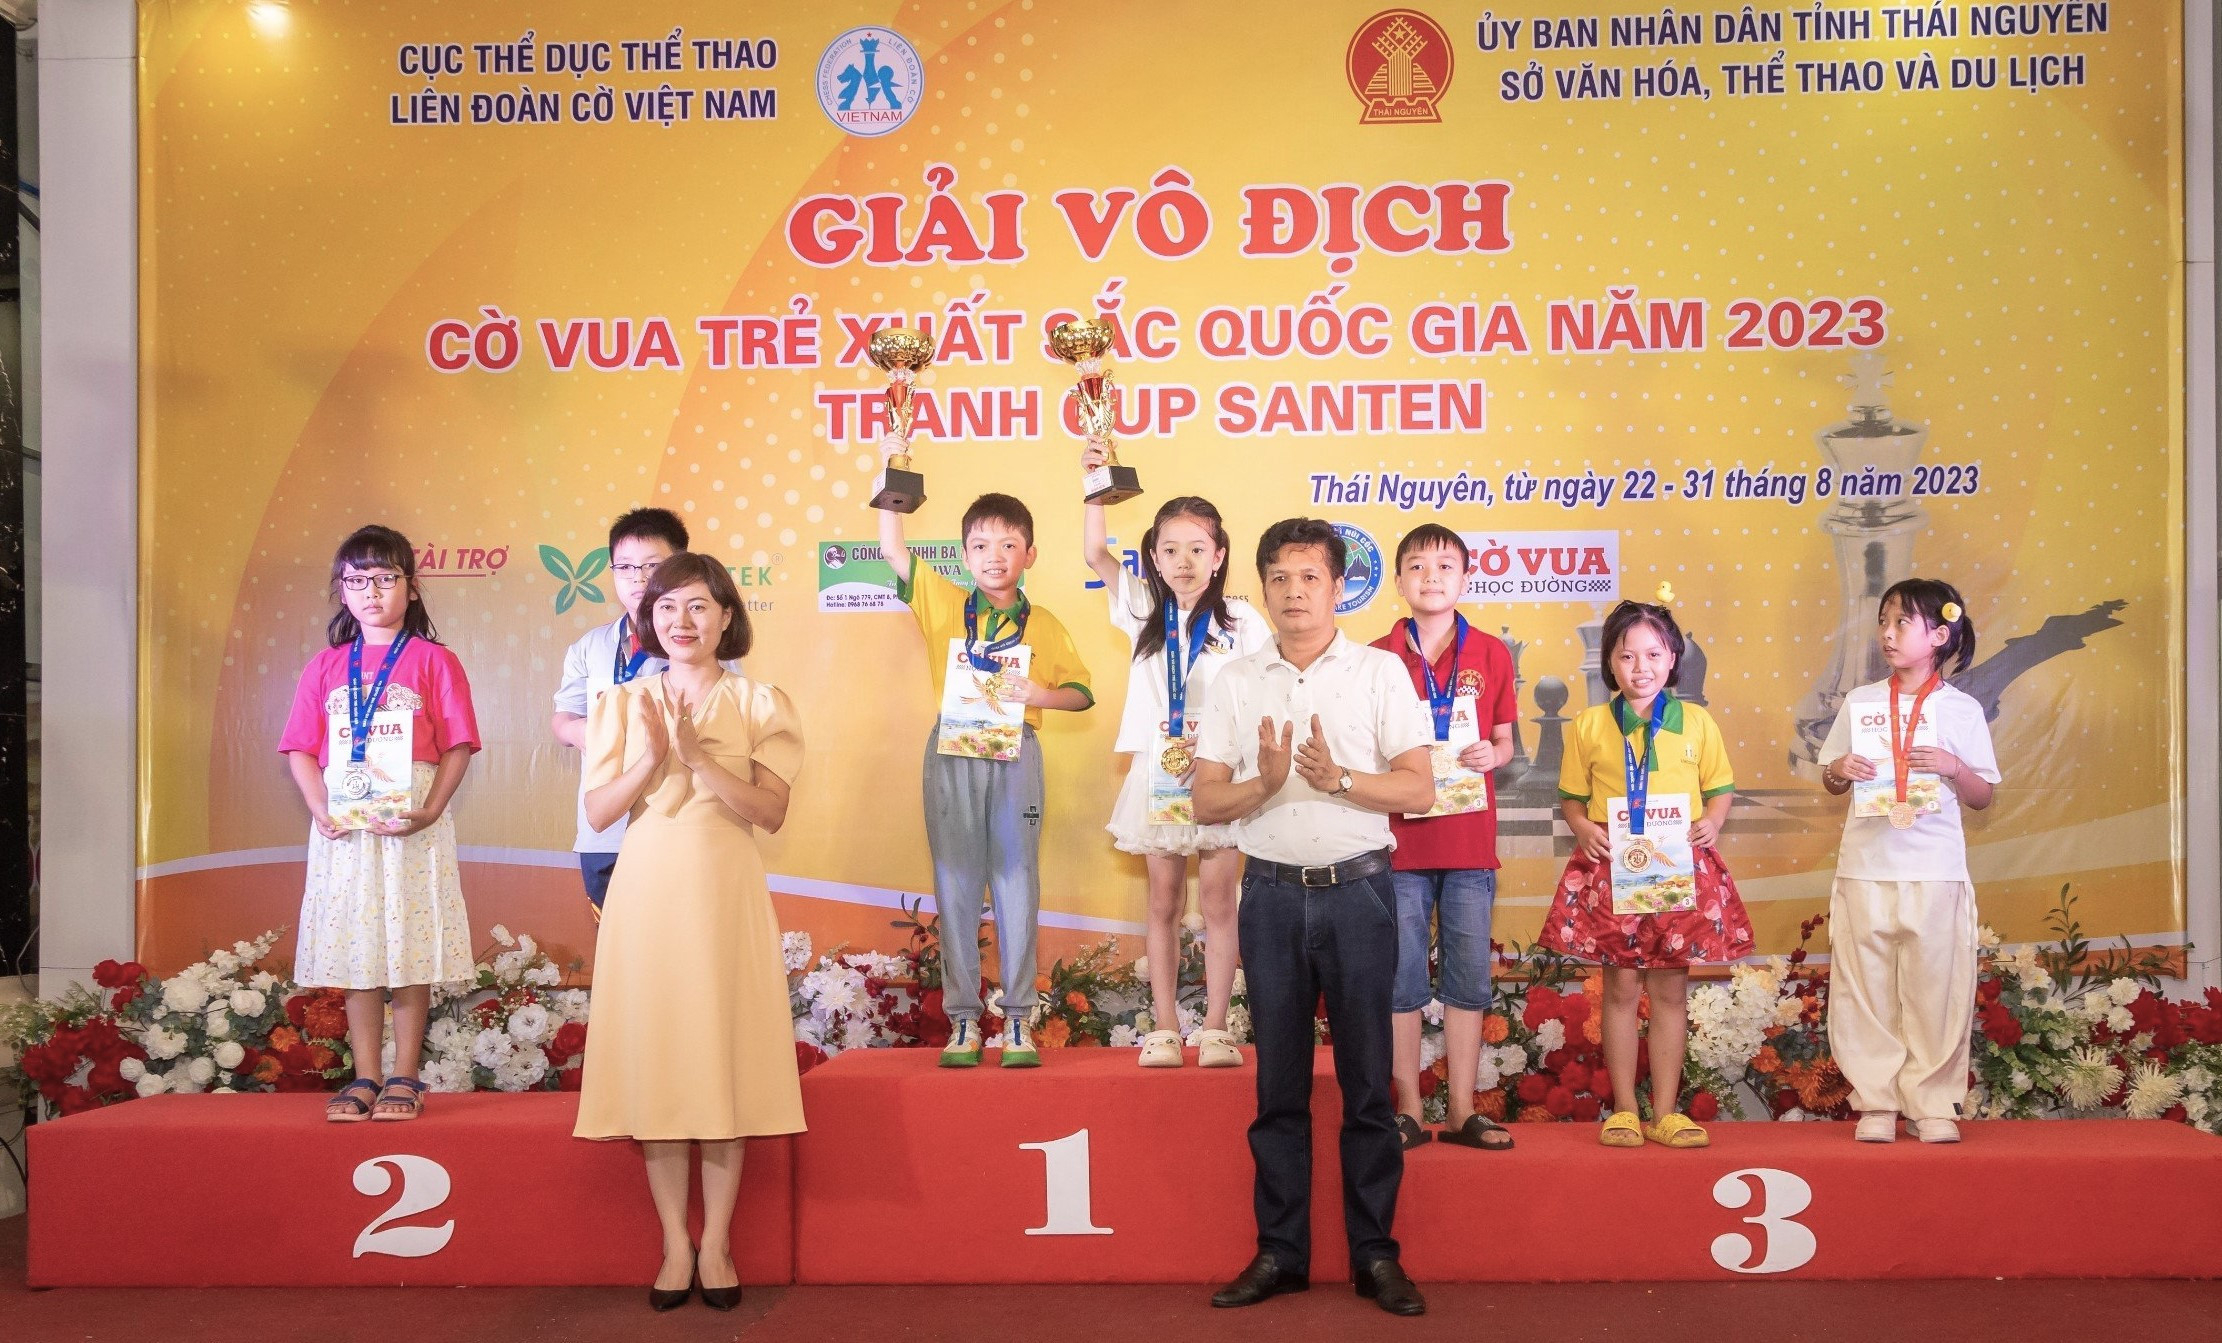 bna_Nguyễn Thị Phương Anh giành chức vô địch lứa tuổi U8 tại Giải vô địch cờ vua trẻ xuất sắc Quốc gia 2023.jpg